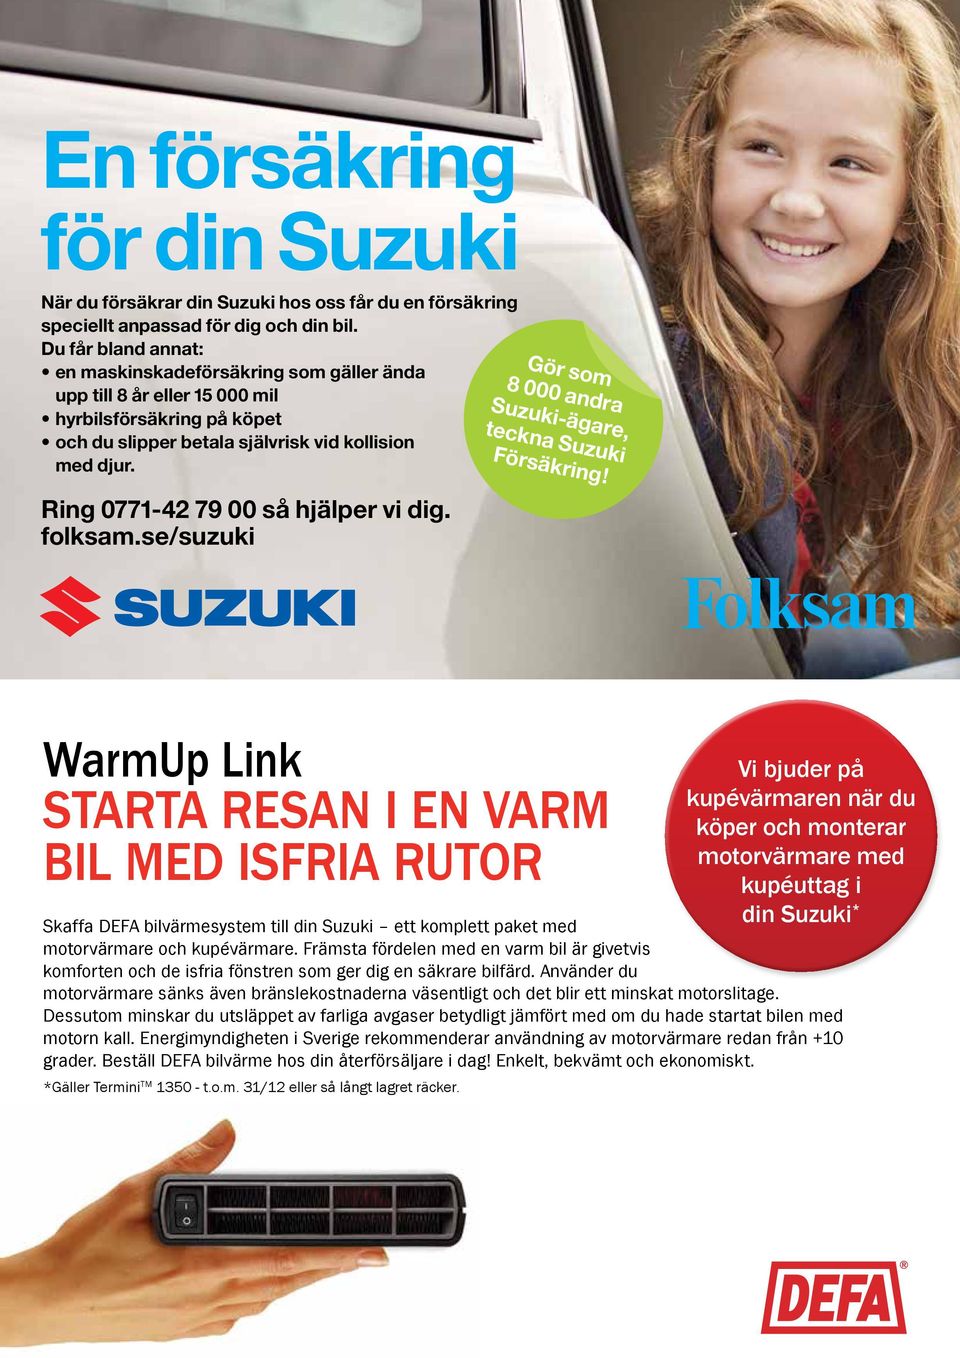 Ring 0771-42 79 00 så hjälper vi dig. folksam.se/suzuki 8 000 andra Suzuki-ägare, teckna Suzuki Försäkring!